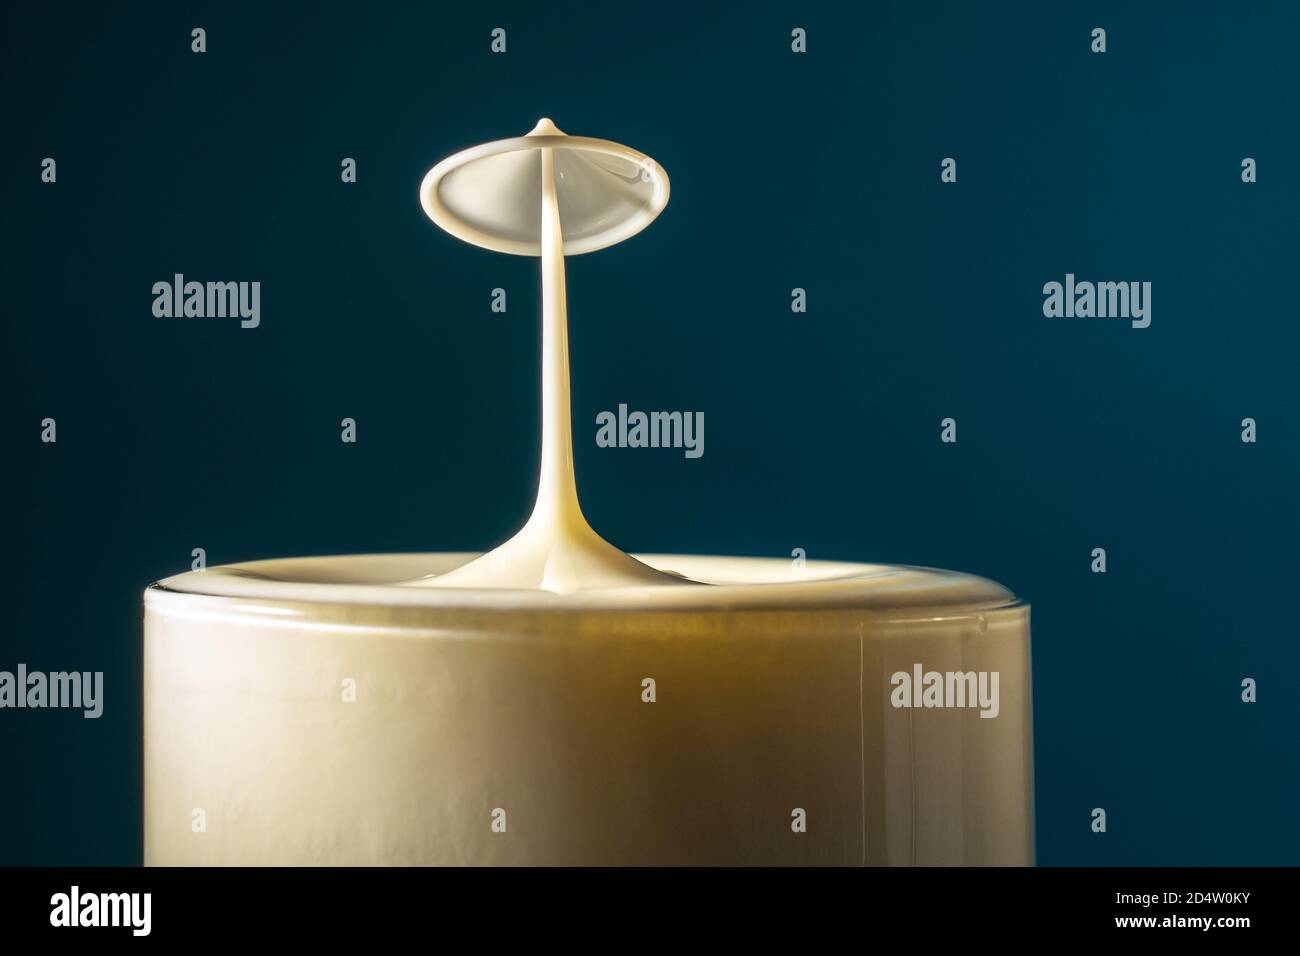 Deux gouttes de lait tombent dans le verre à boisson long se heurtant les uns aux autres, la surface du liquide se forme comme un champignon Banque D'Images